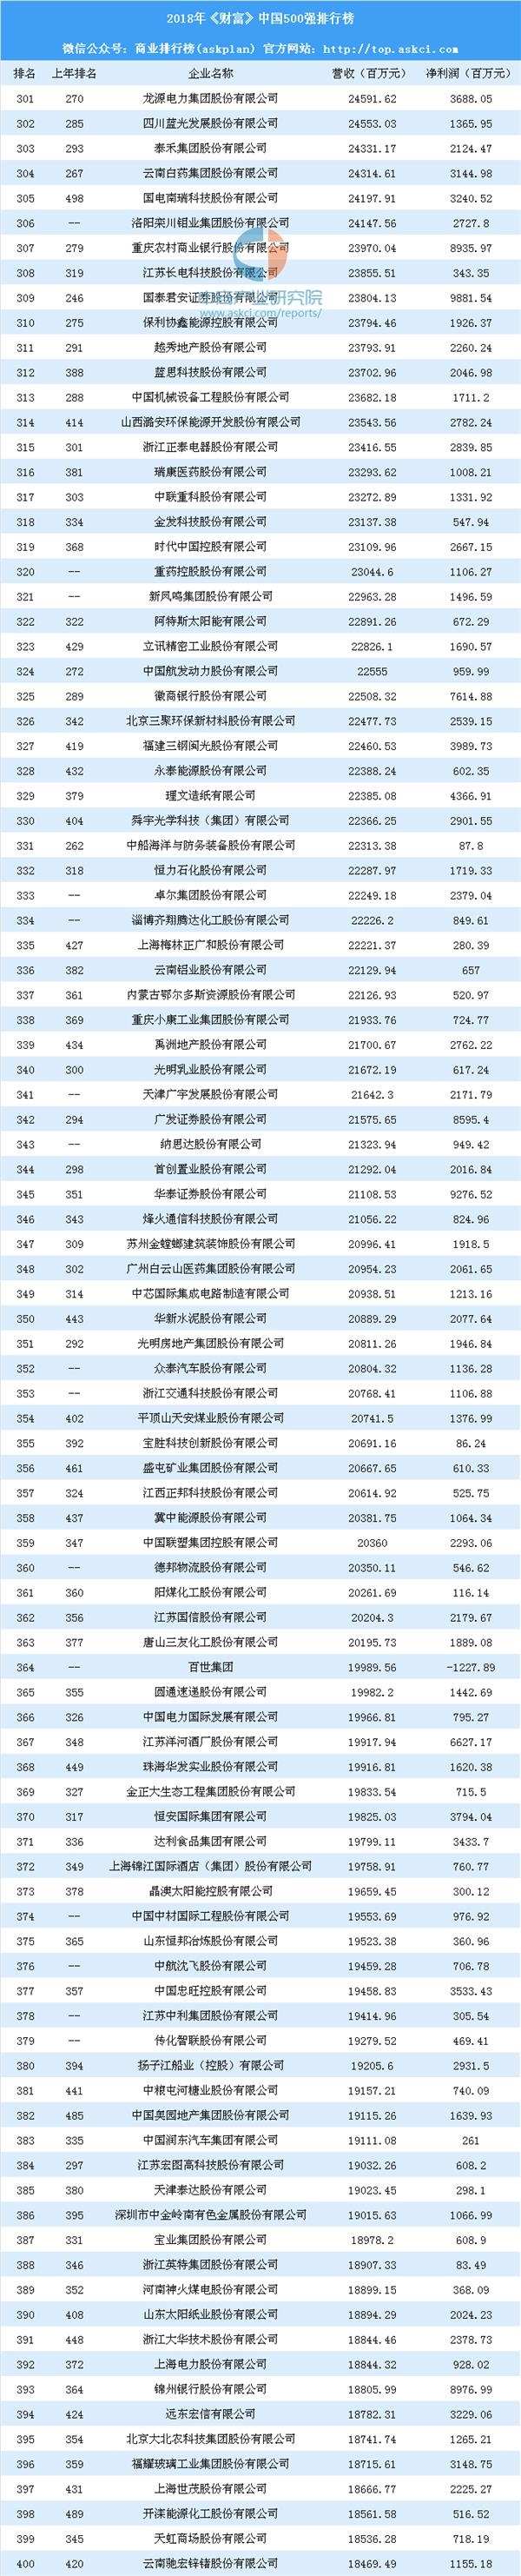 中国500强排行榜_2018年中国500强排行榜:中石化第一平安排名前进1名(附完整榜单)